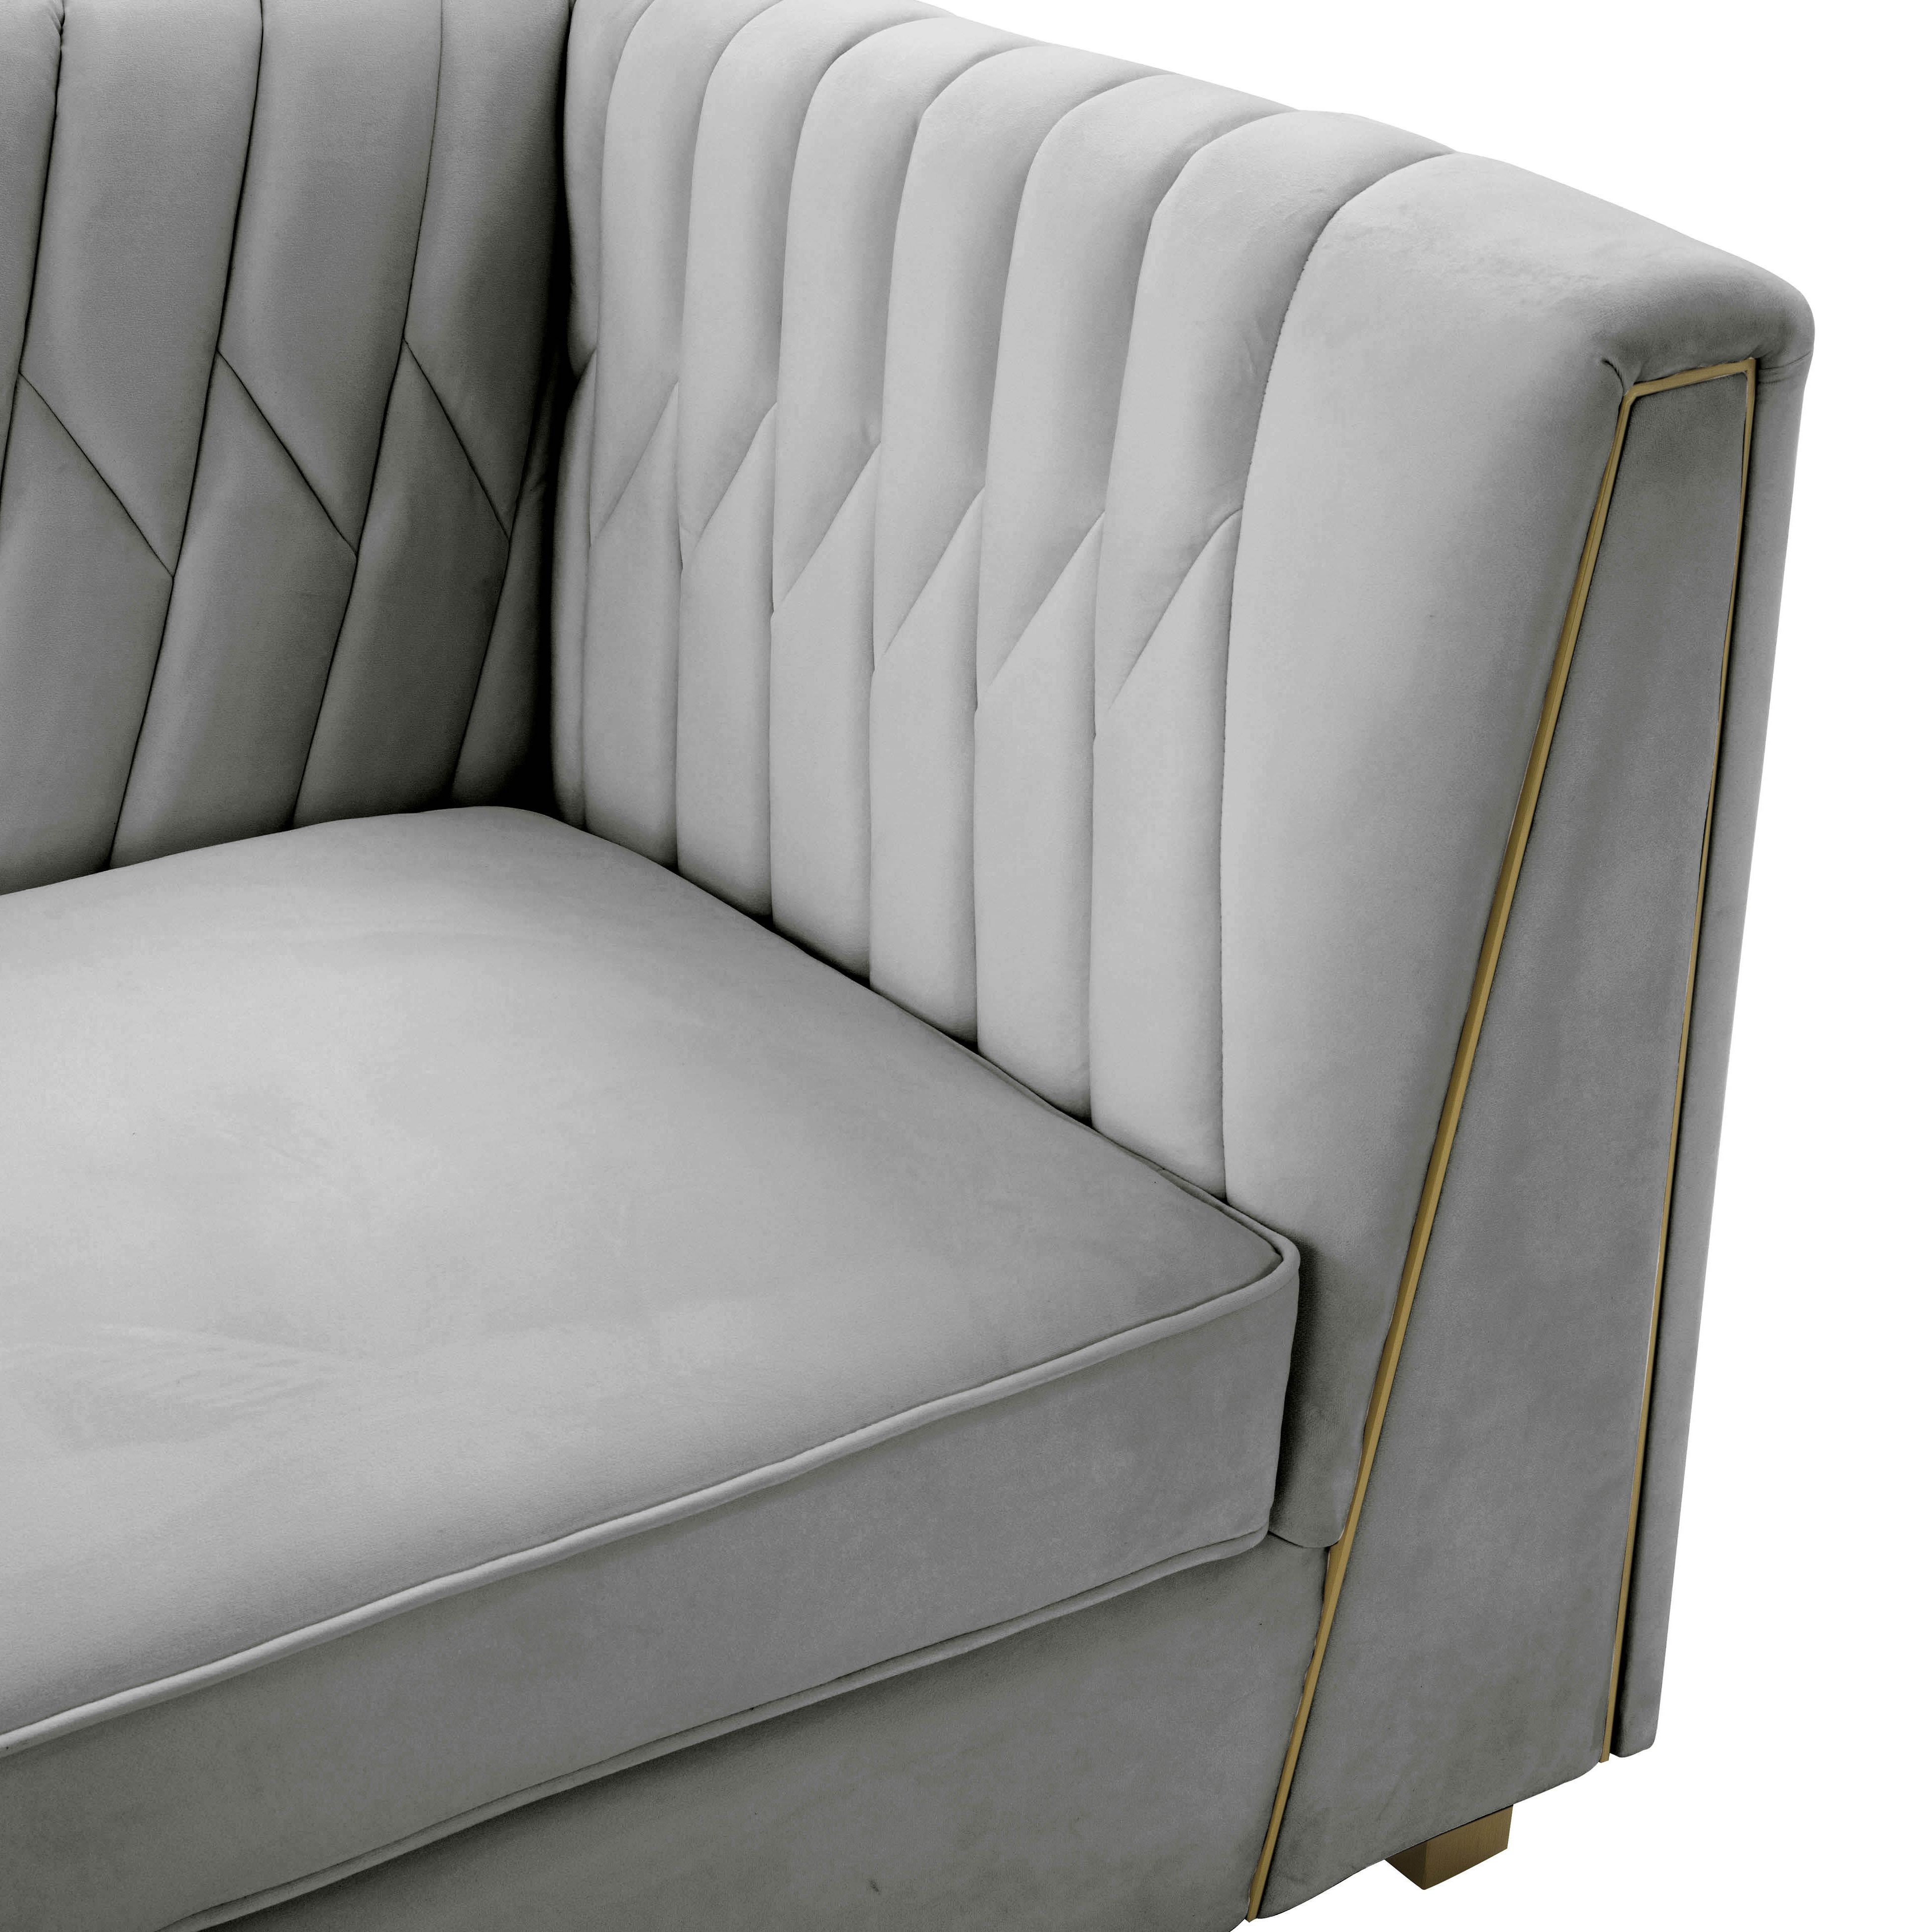 Wafa Light Grey Velvet Sofainspire Me! Home Decor – Tov Furniture For Light Gray Velvet Sofas (View 2 of 20)